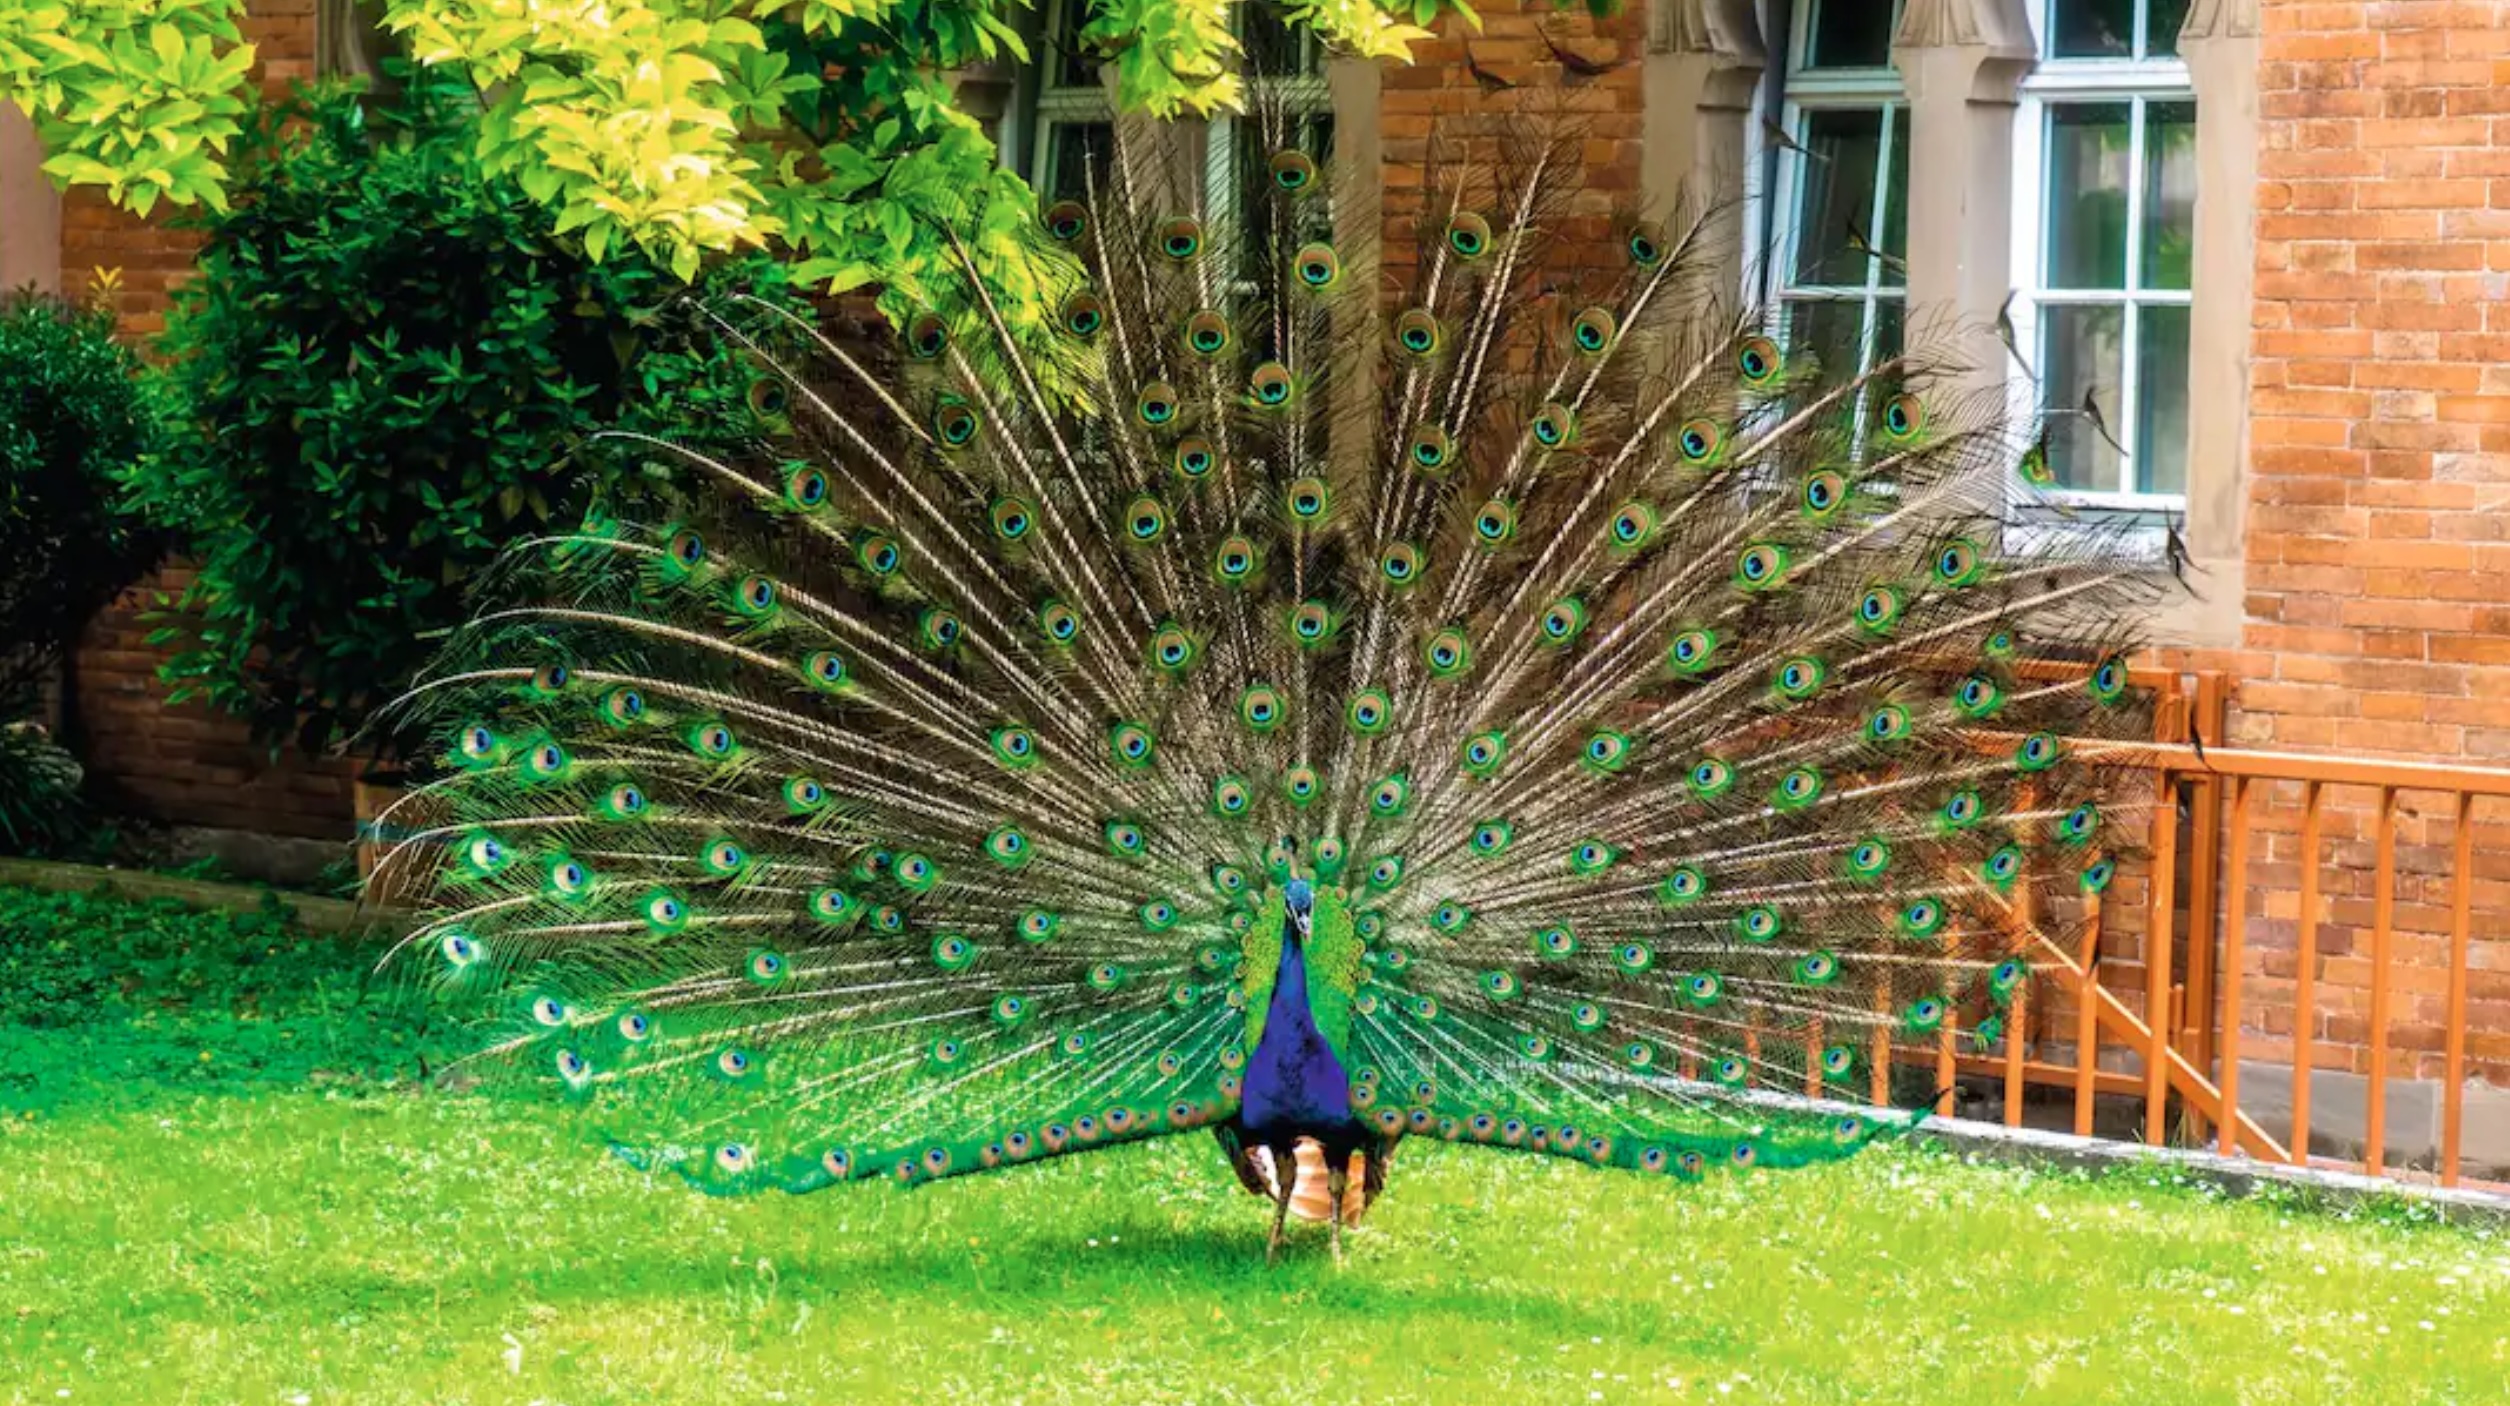 Peacock in Stuttgart park